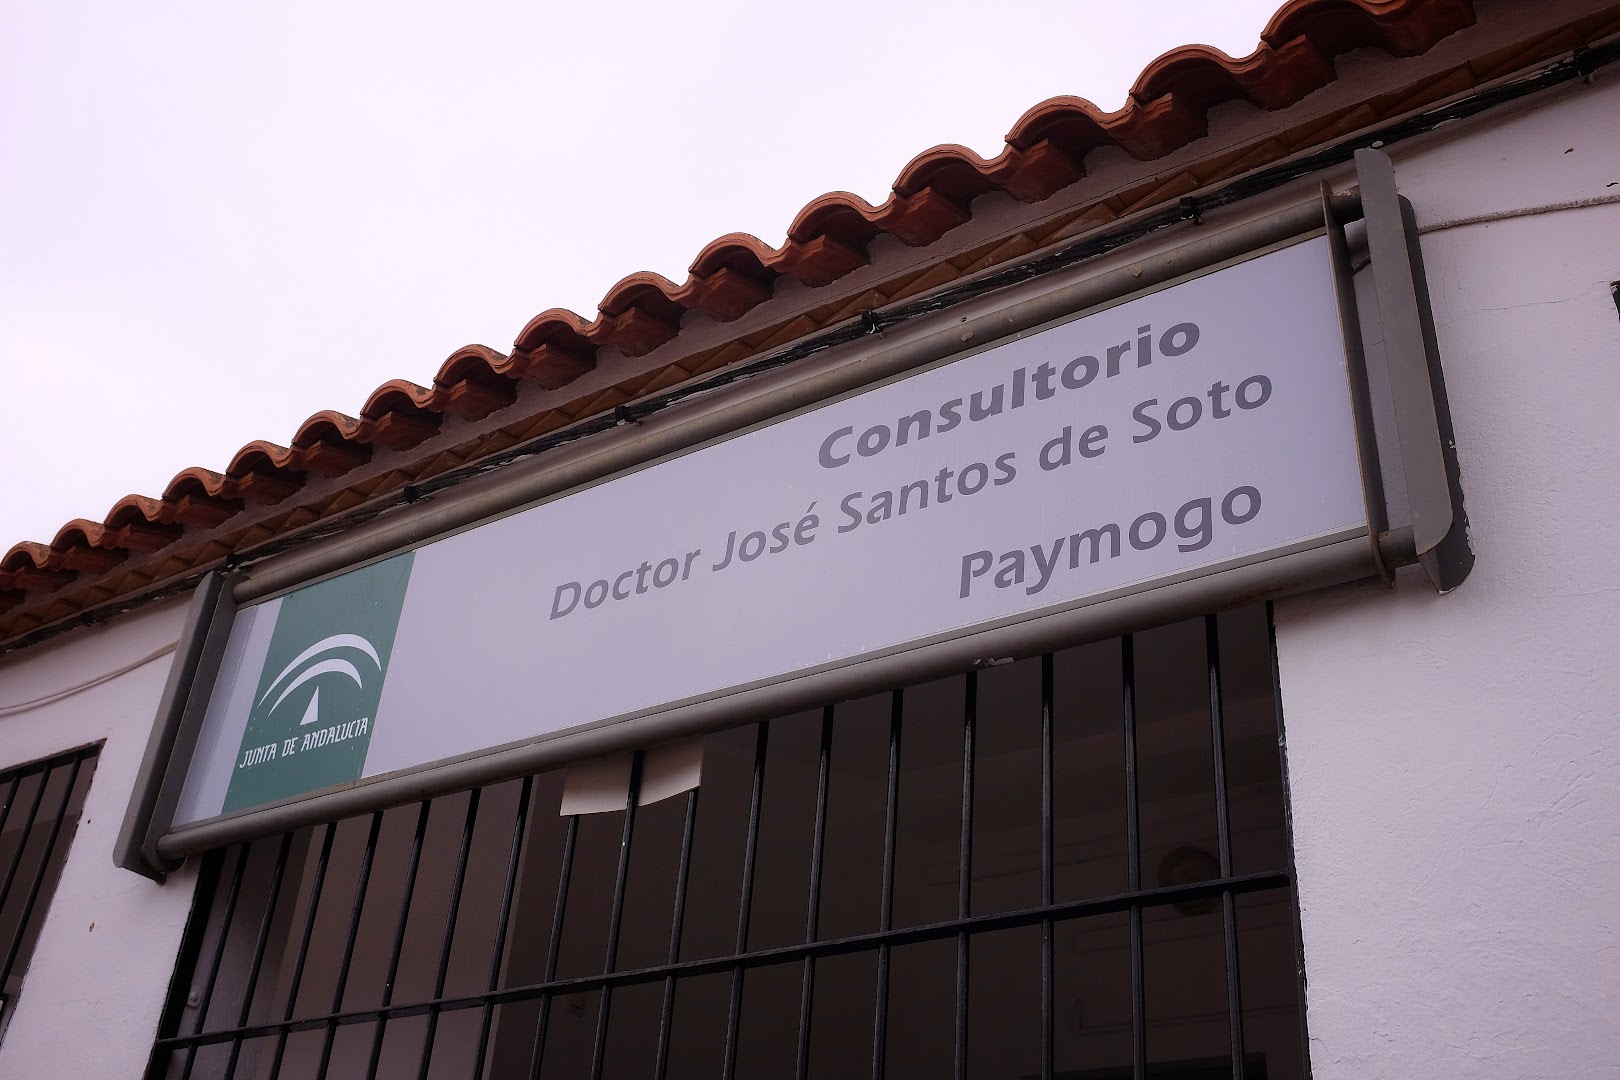 Consultorio Doctor Jose Santos de Soto